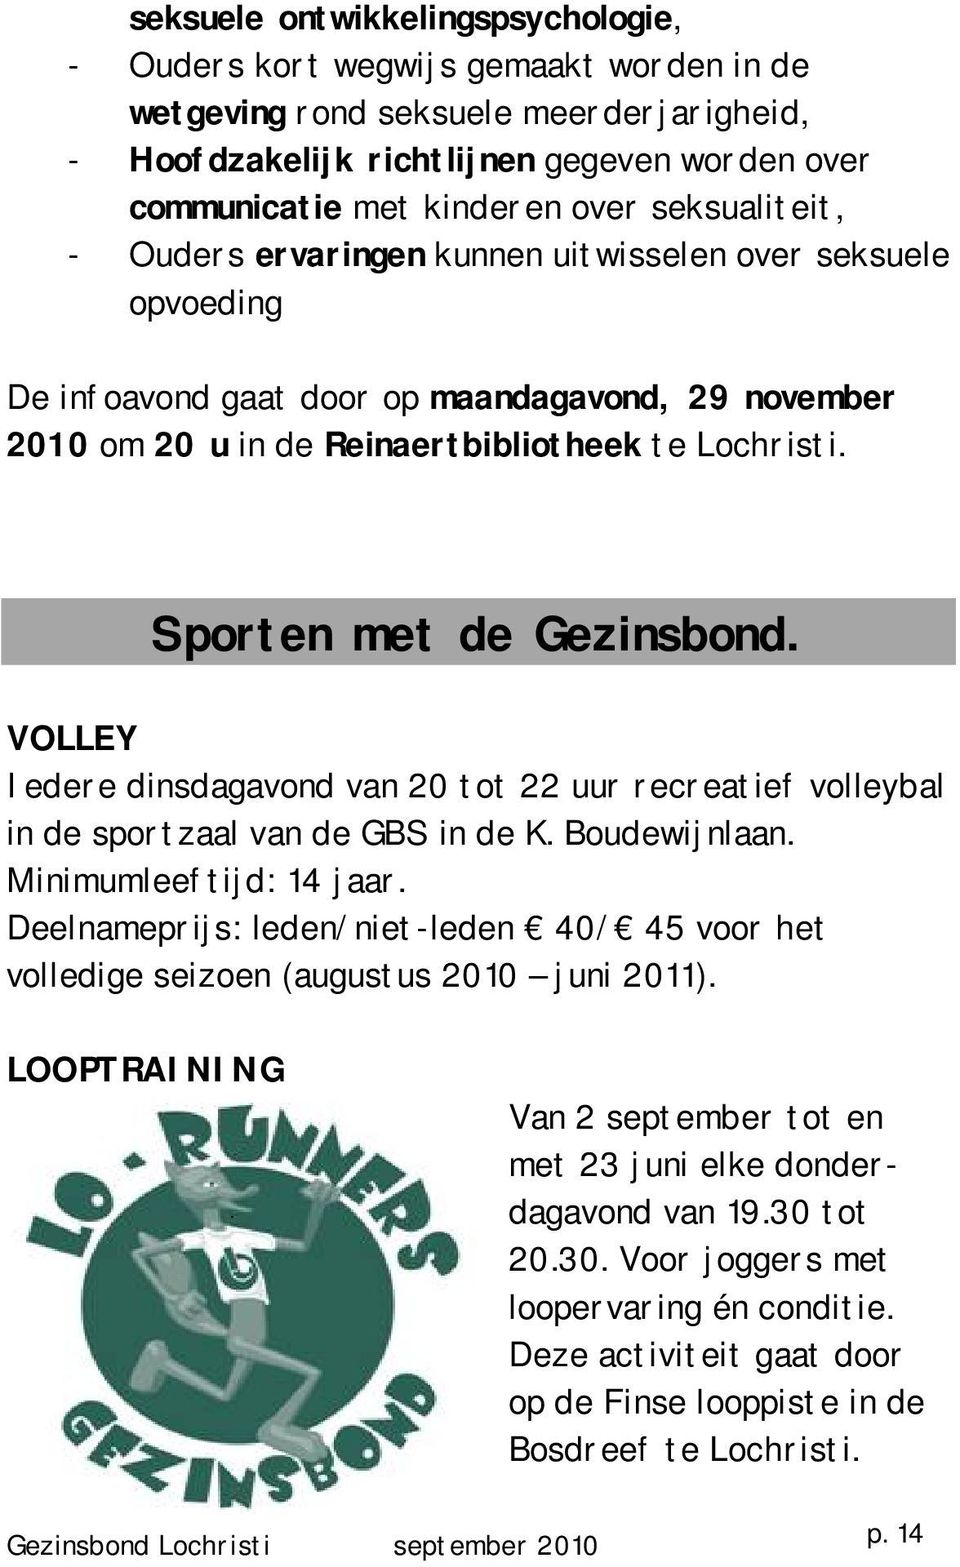 Sporten met de Gezinsbond. VOLLEY Iedere dinsdagavond van 20 tot 22 uur recreatief volleybal in de sportzaal van de GBS in de K. Boudewijnlaan. Minimumleeftijd: 14 jaar.